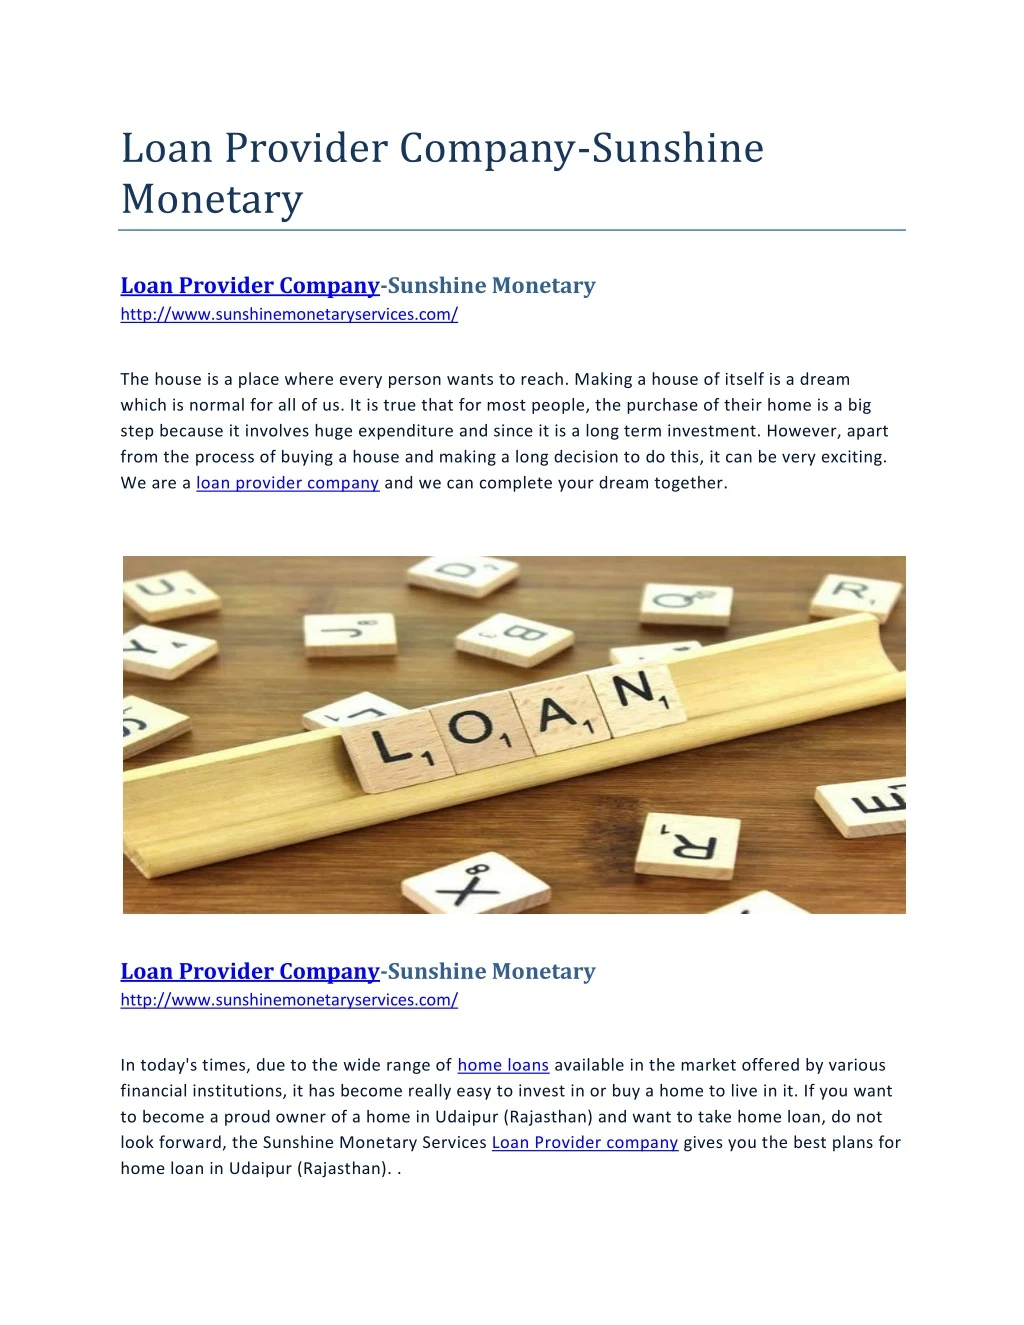 loan provider company sunshine monetary